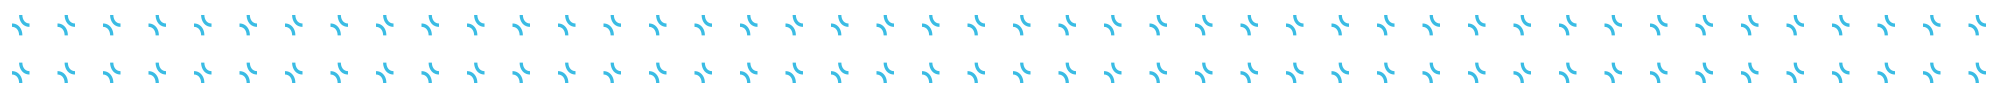 BluePearl logo pattern